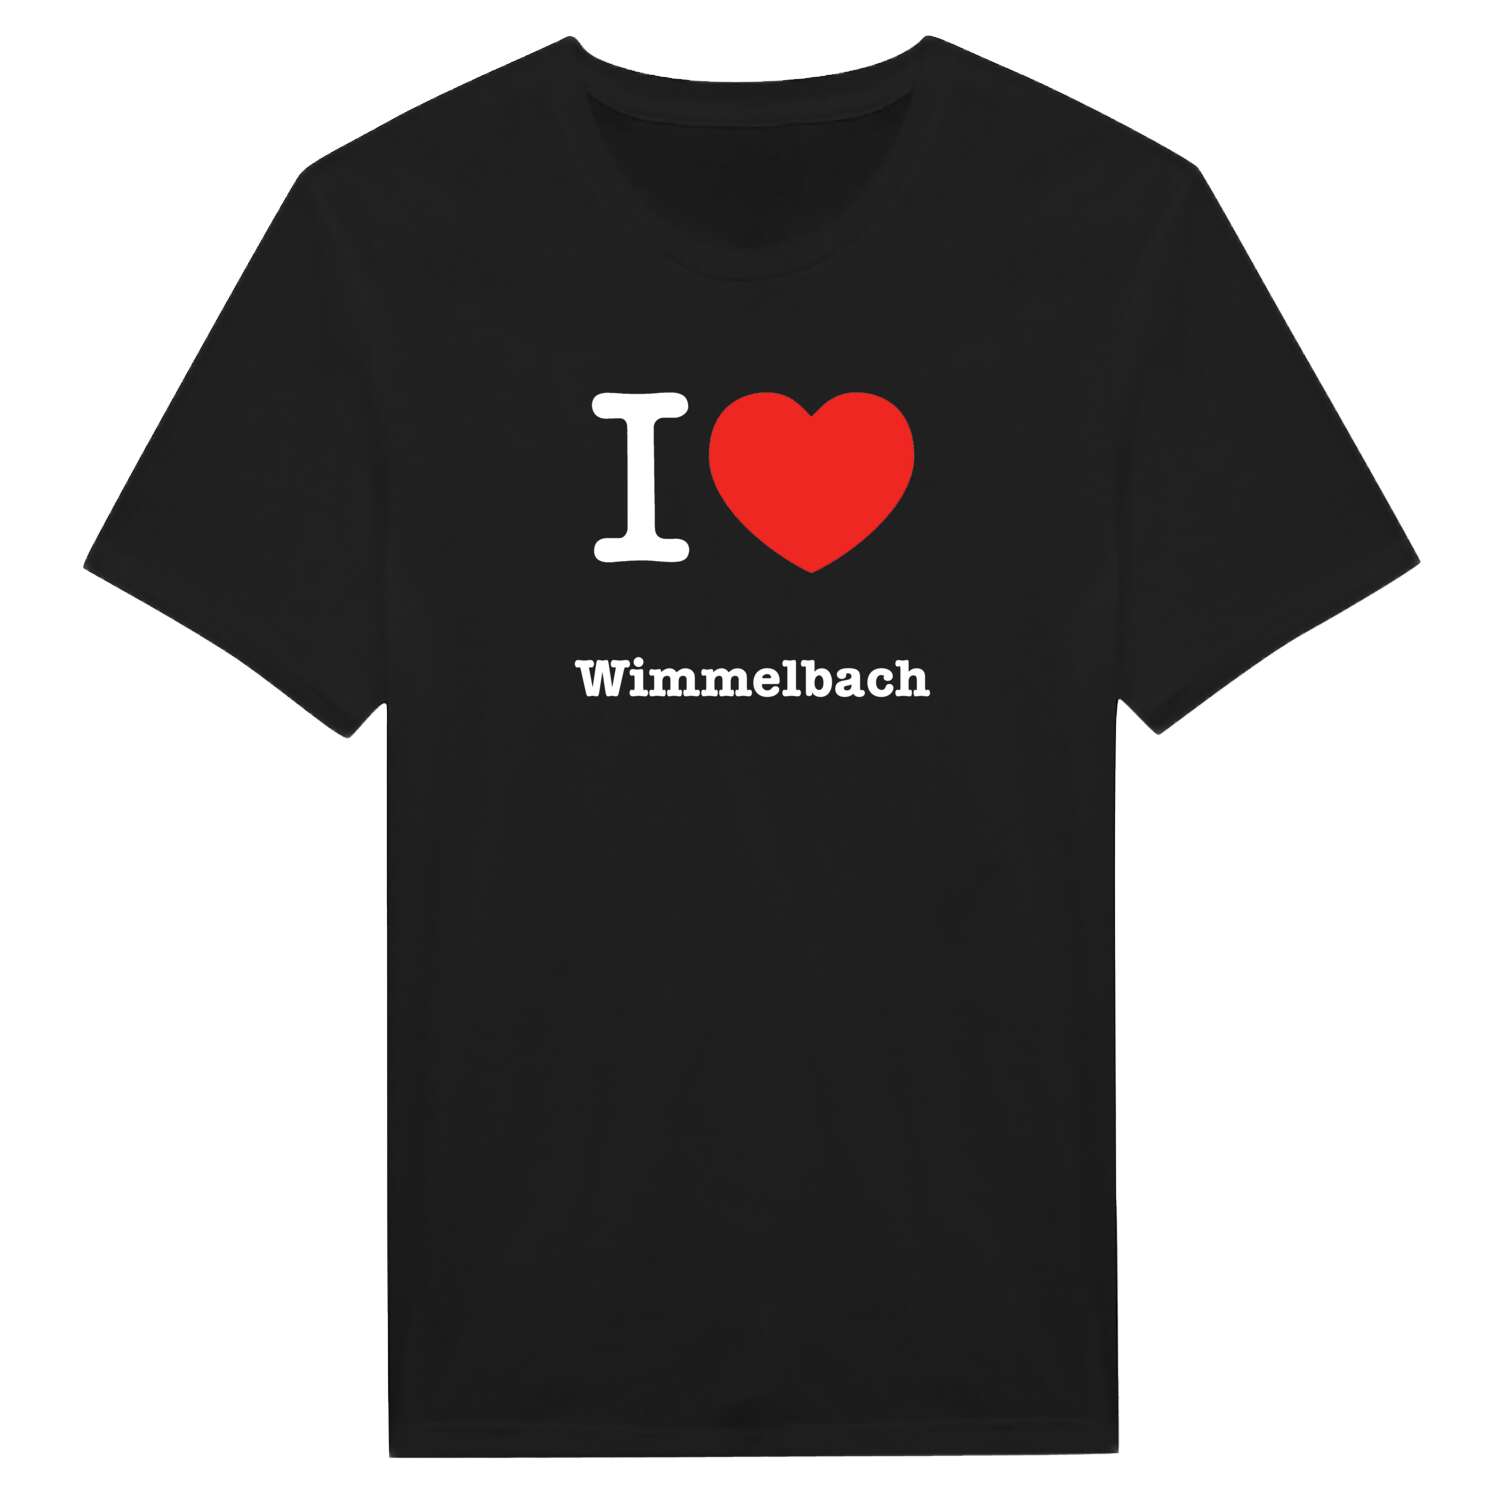 Wimmelbach T-Shirt »I love«